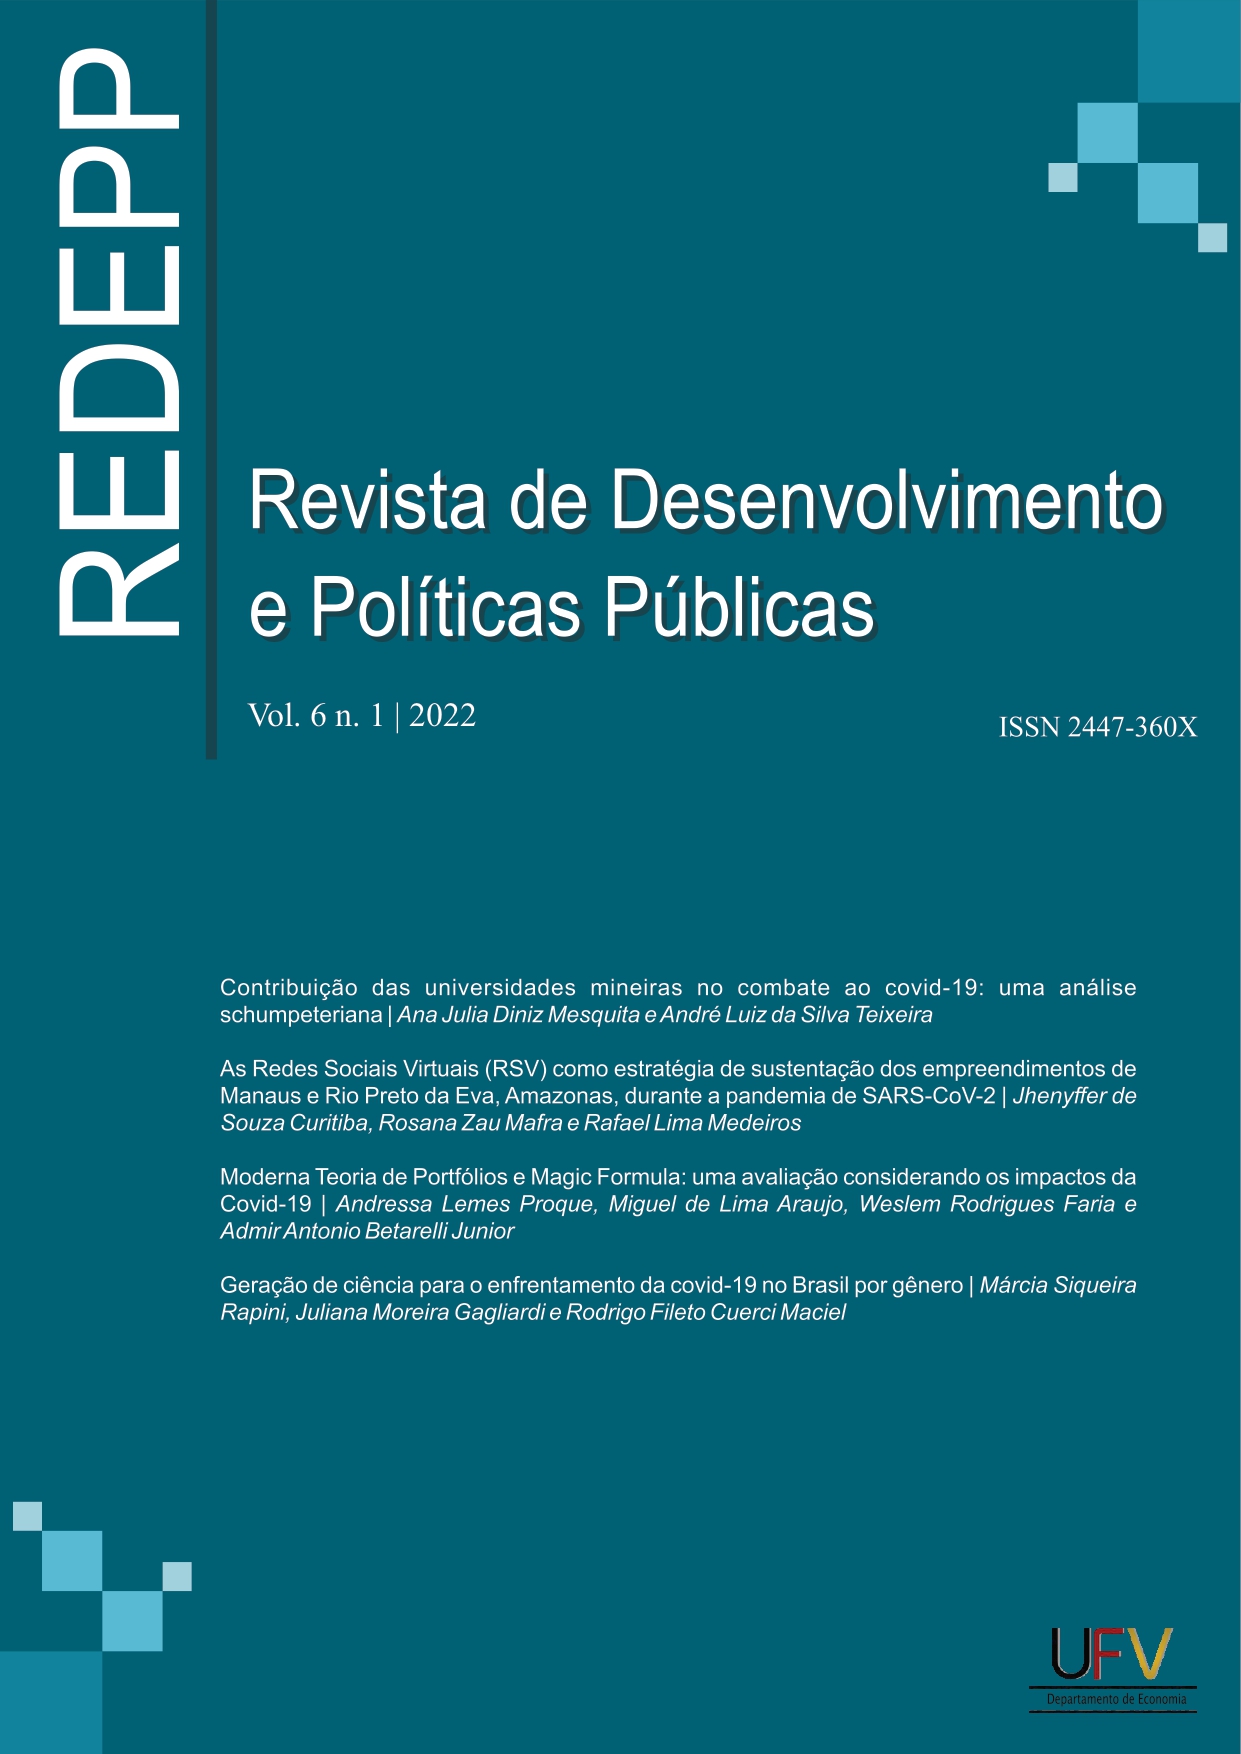 					Visualizar v. 6 n. 1 (2022): Revista de Desenvolvimento e Políticas Públicas [ISSN: 2447-360X]
				